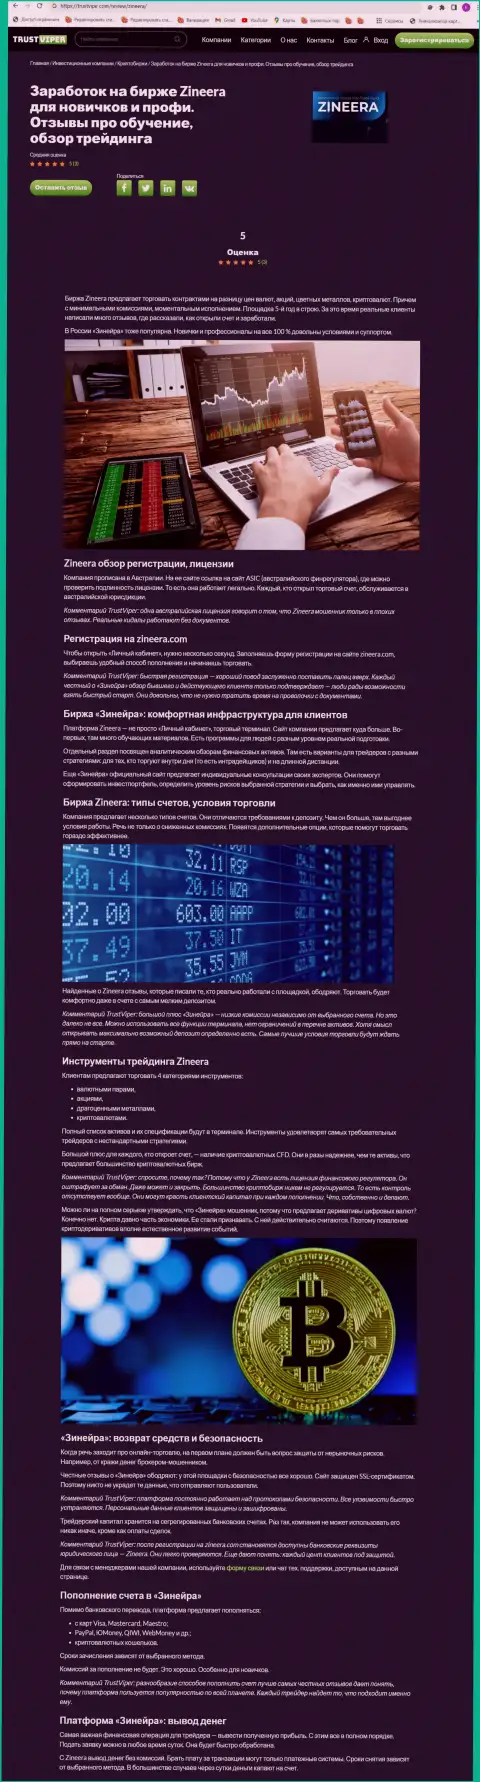 Обзор условий для совершения сделок крипто биржевой организации Зинейра на сайте trustviper com